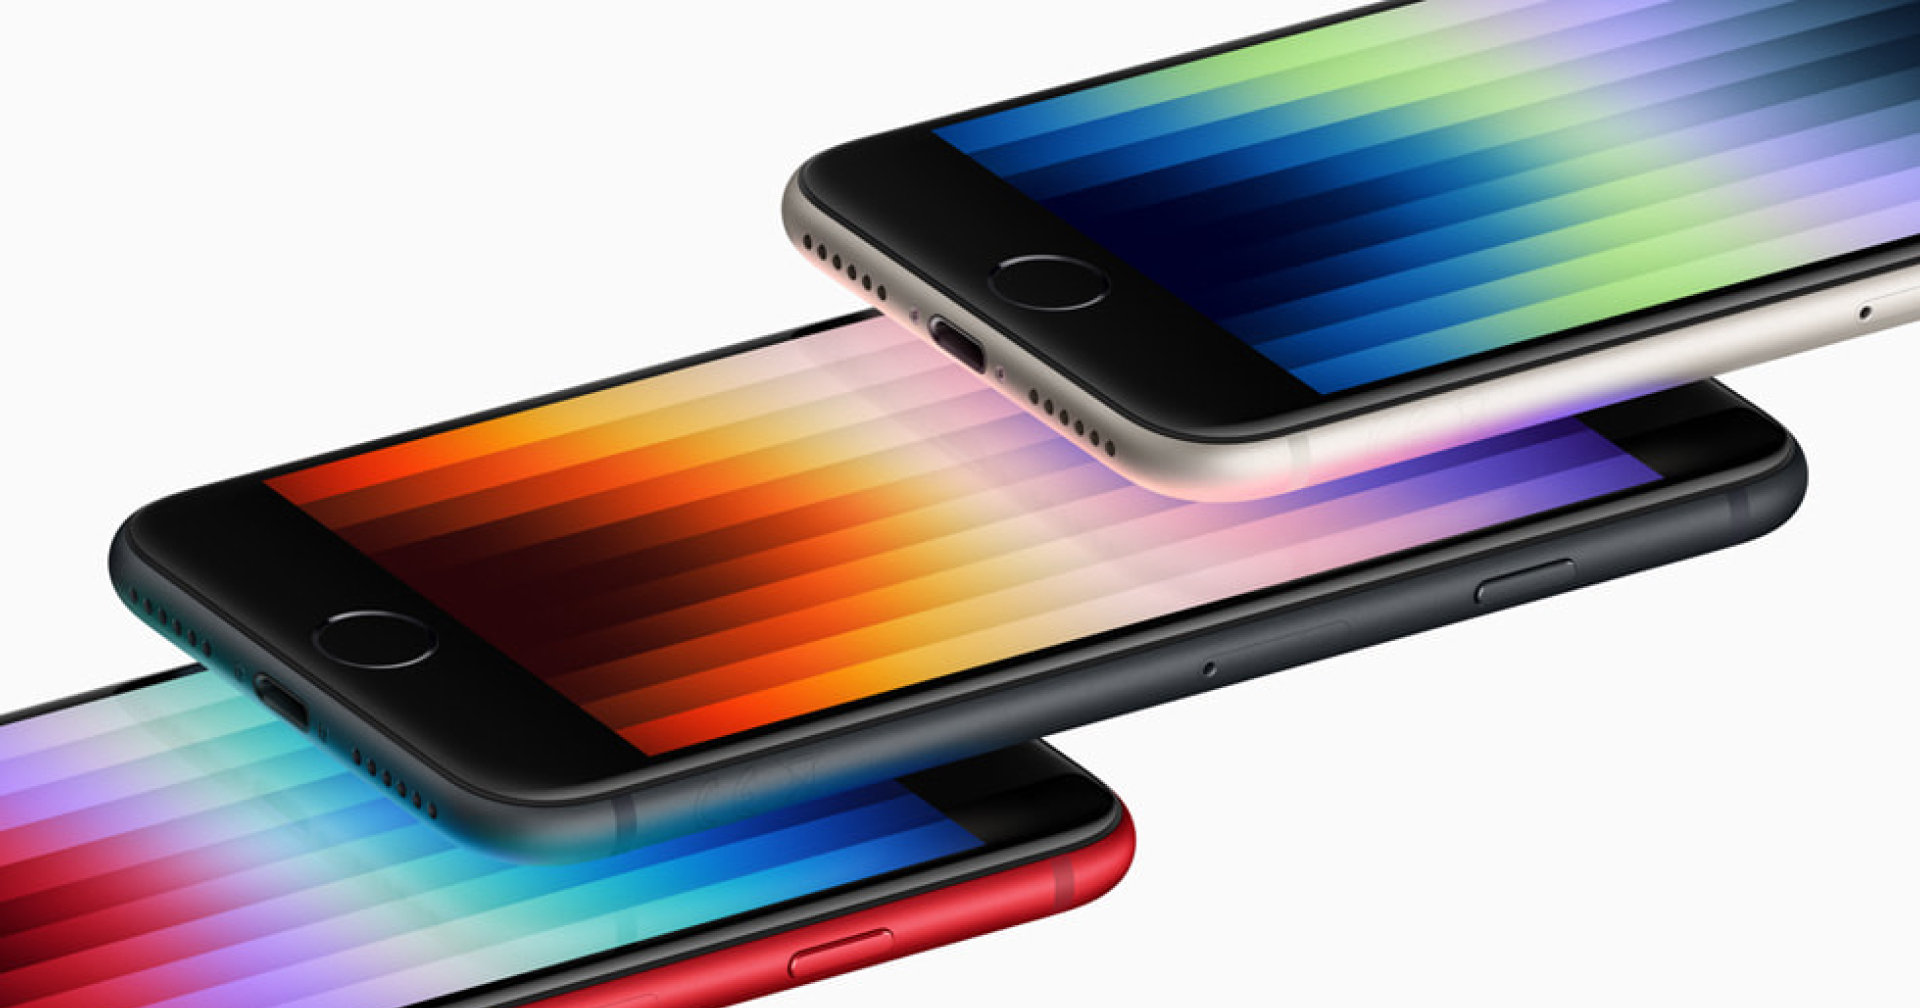 รุ่นเล็กสเปกใหญ่ iPhone SE 2022 สอดไส้เหมือนพี่ใหญ่ ชิป A15, 5G ในราคาเริ่มต้น 15,900 บาท!